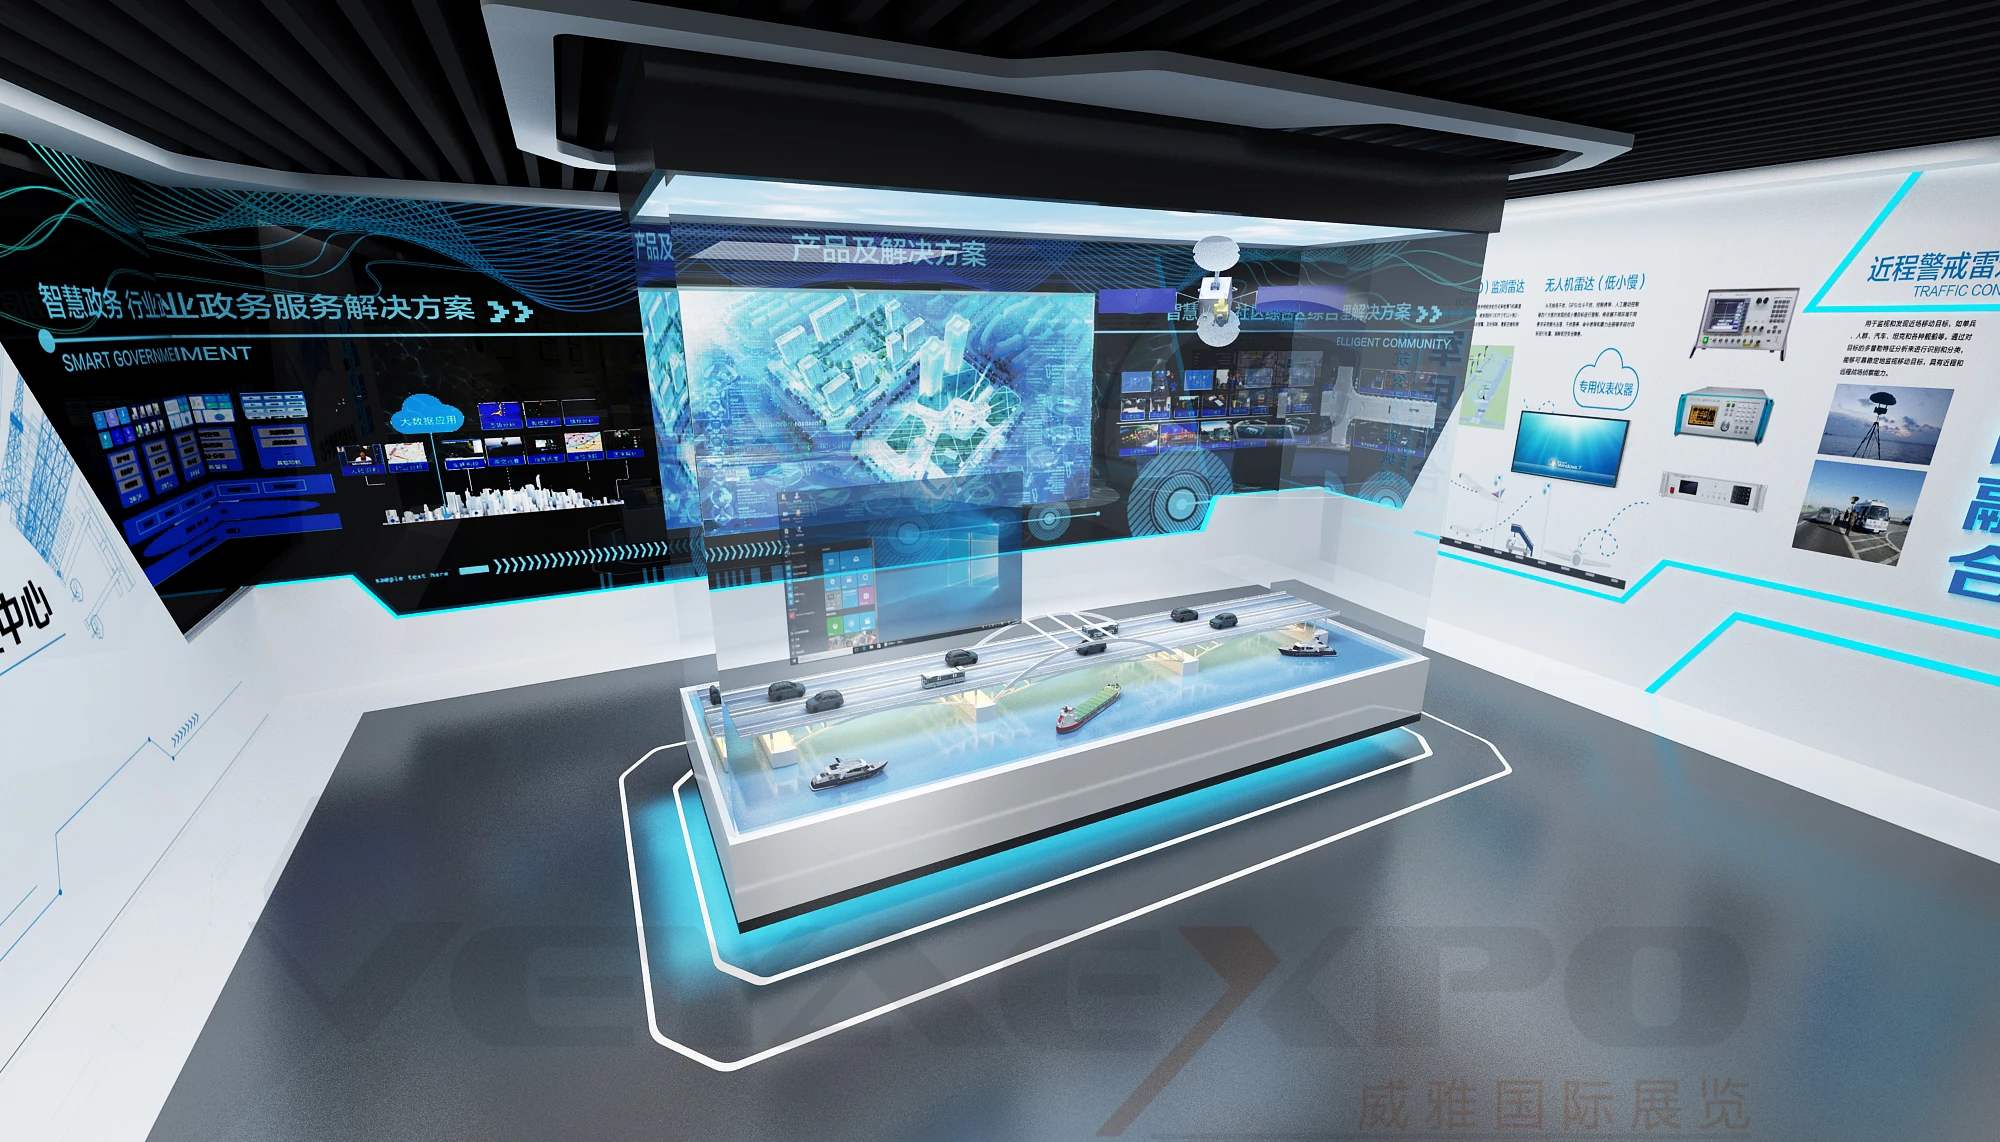 VR虛擬展廳,讓企業展廳24小時在線展示傳播